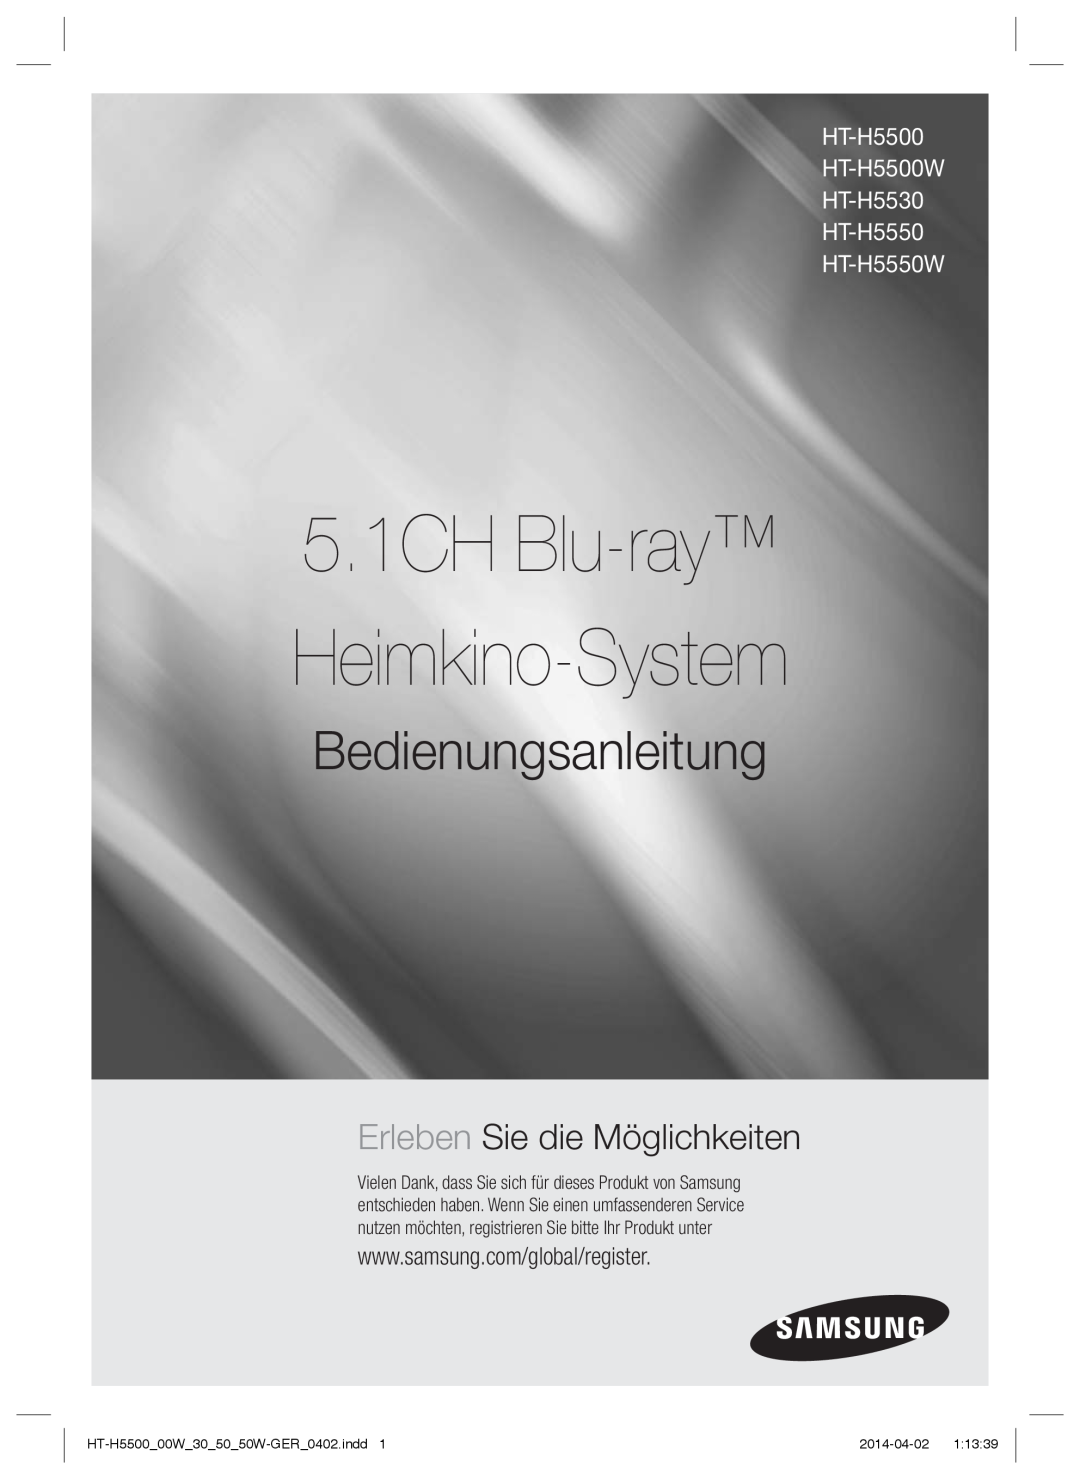 Samsung HT-H5550/XN manual 5.1CH Blu-ray Heimkino-System, Bedienungsanleitung, Erleben Sie die Möglichkeiten, 2014-04-02 